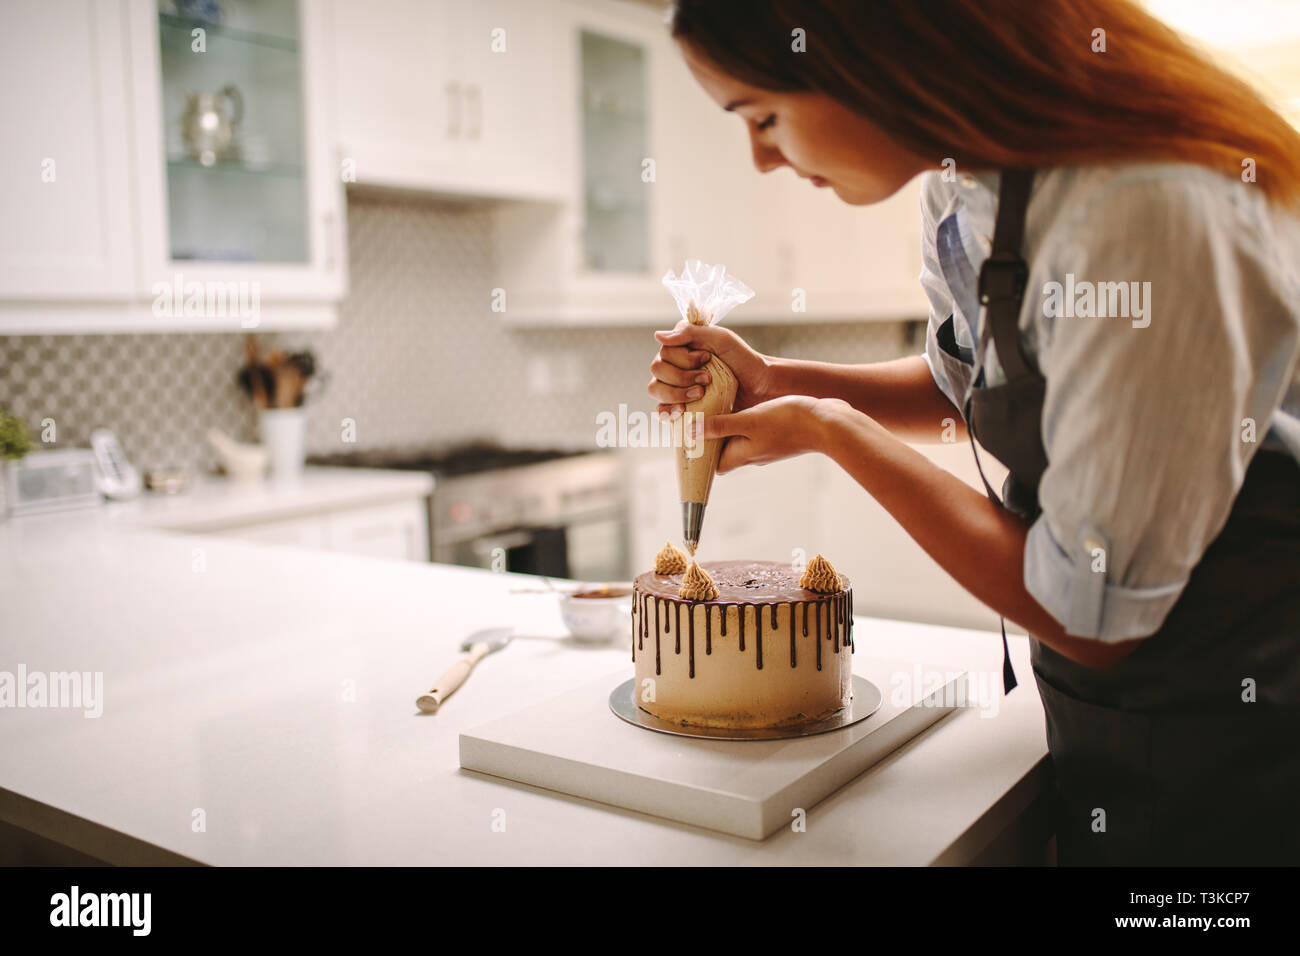 Femme pastry chef decorating cake au chocolat dans la cuisine. Femme portant un tablier decorating cake avec une poche à douille avec de la crème. Banque D'Images